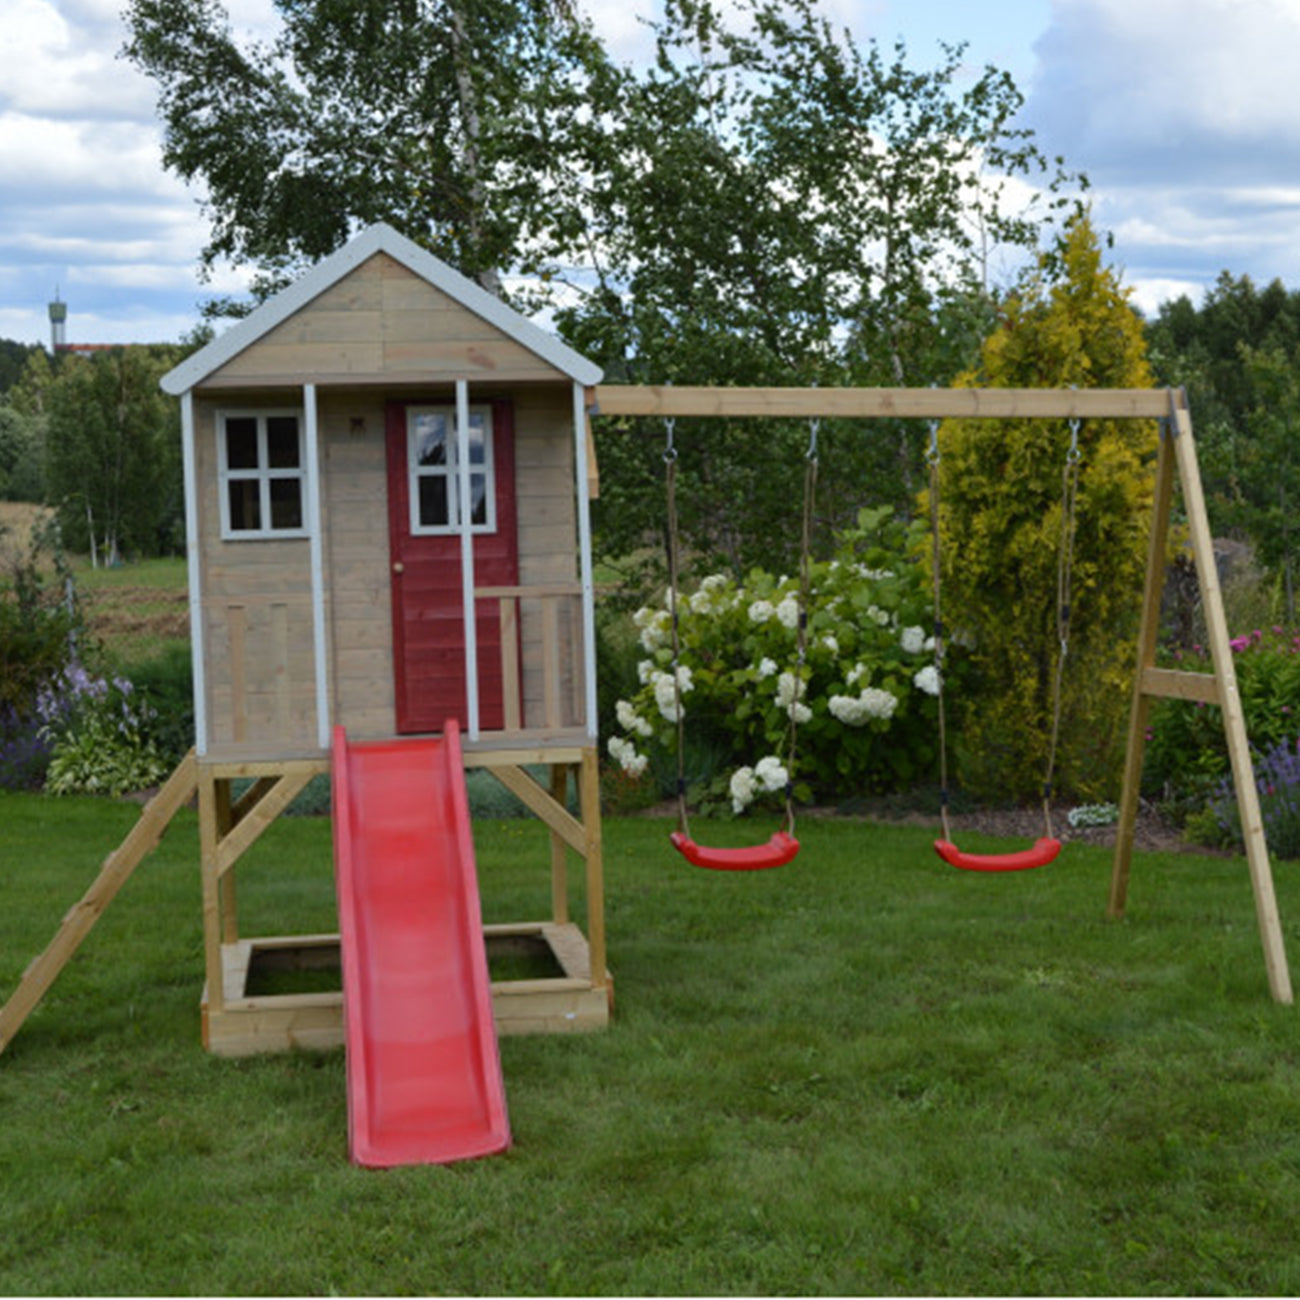 Casuta de gradina pentru copii, Nordic Adventure House cu platforma, loc pentru nisip, tobogan si leagan dublu, +3ani, Wendi Toys